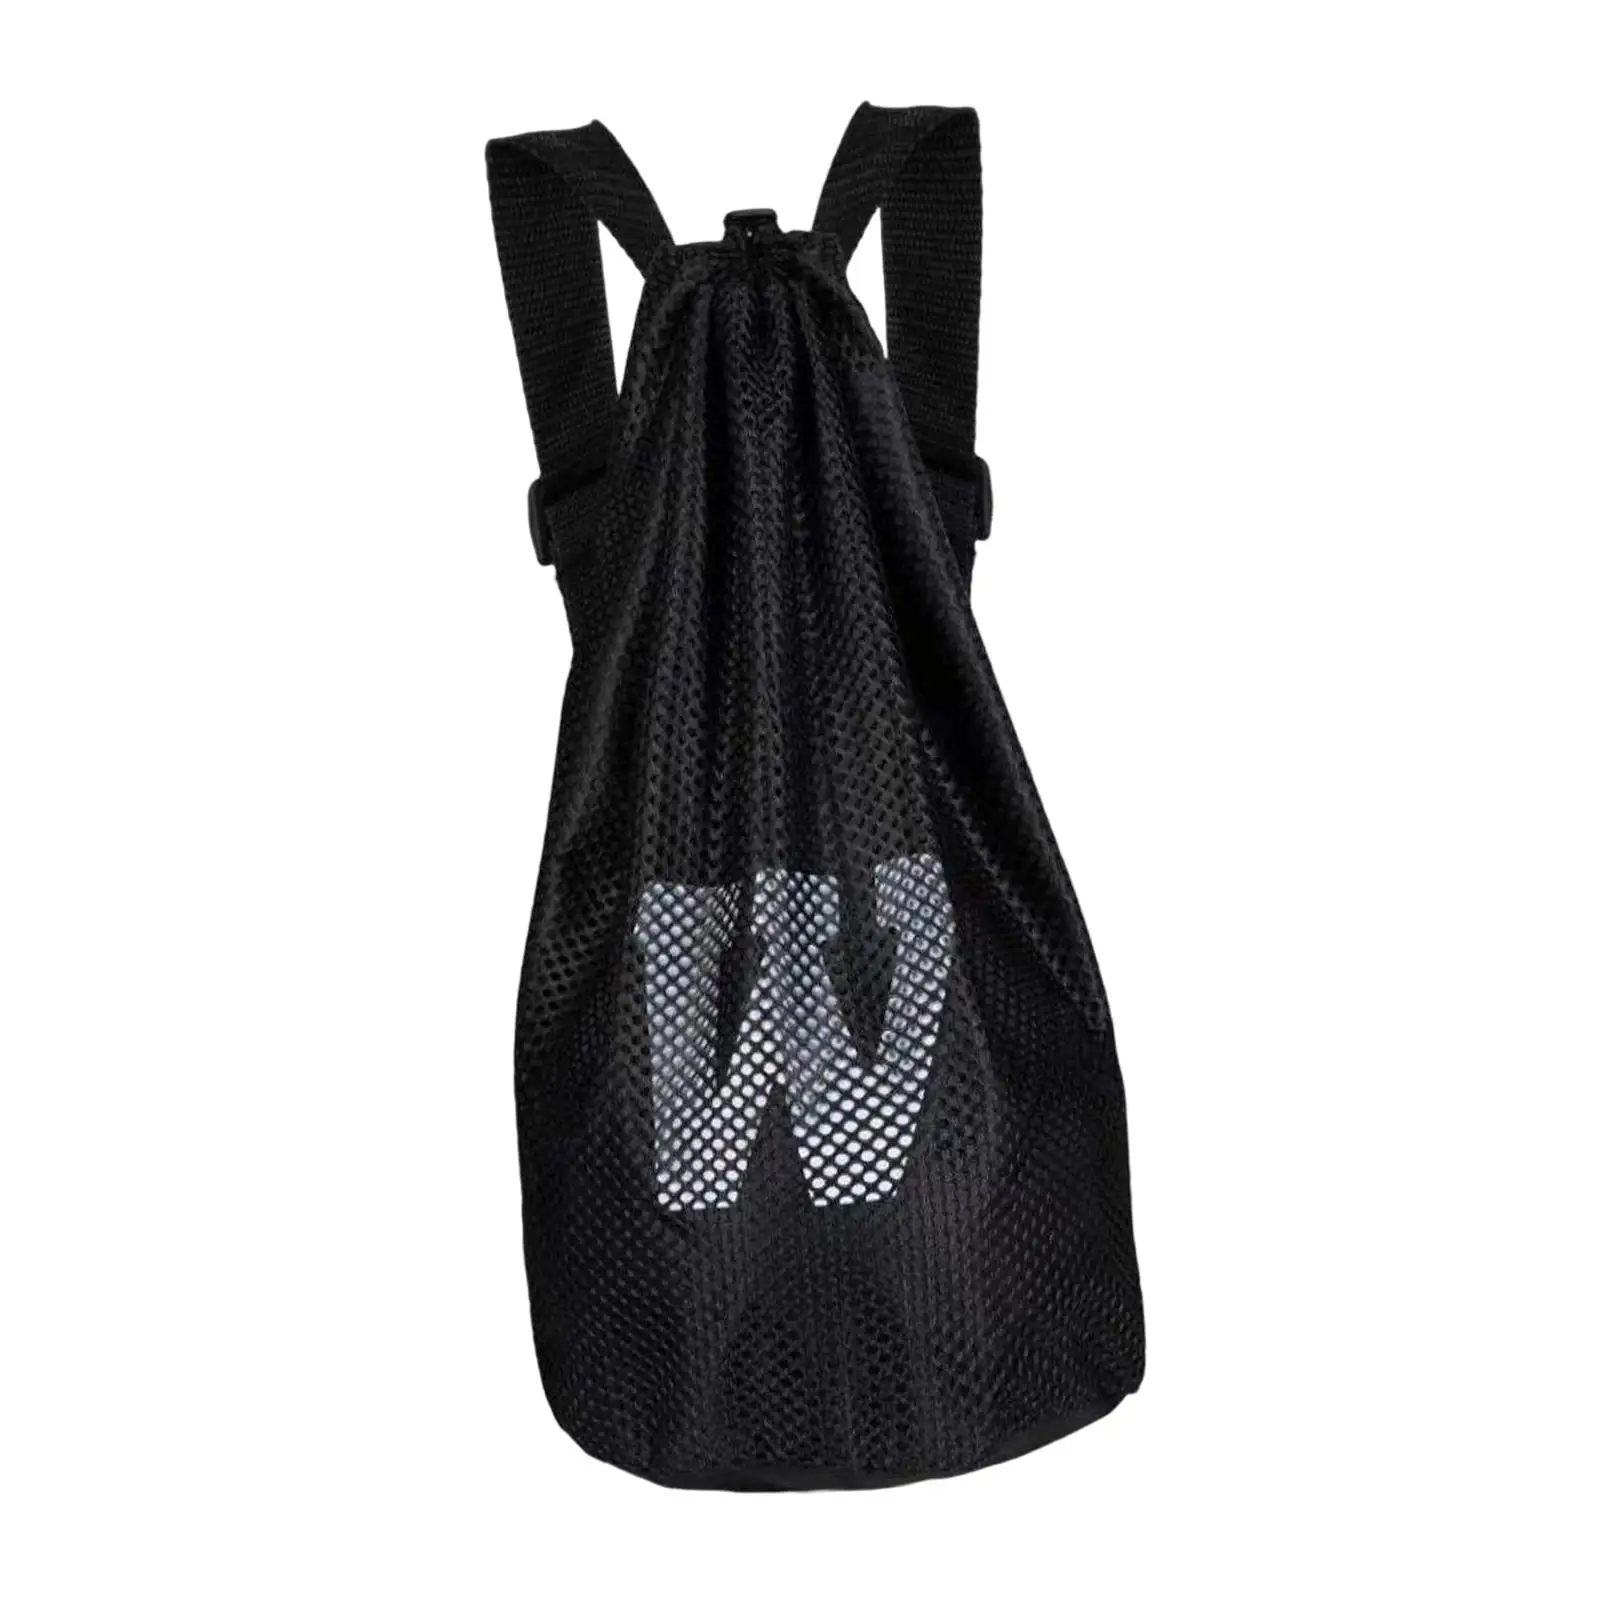 Sports Gym Bag with Adjustable Shoulder Strap Lightweight Storage Bag Organizer Mesh Backpack for Soccer Volleyball